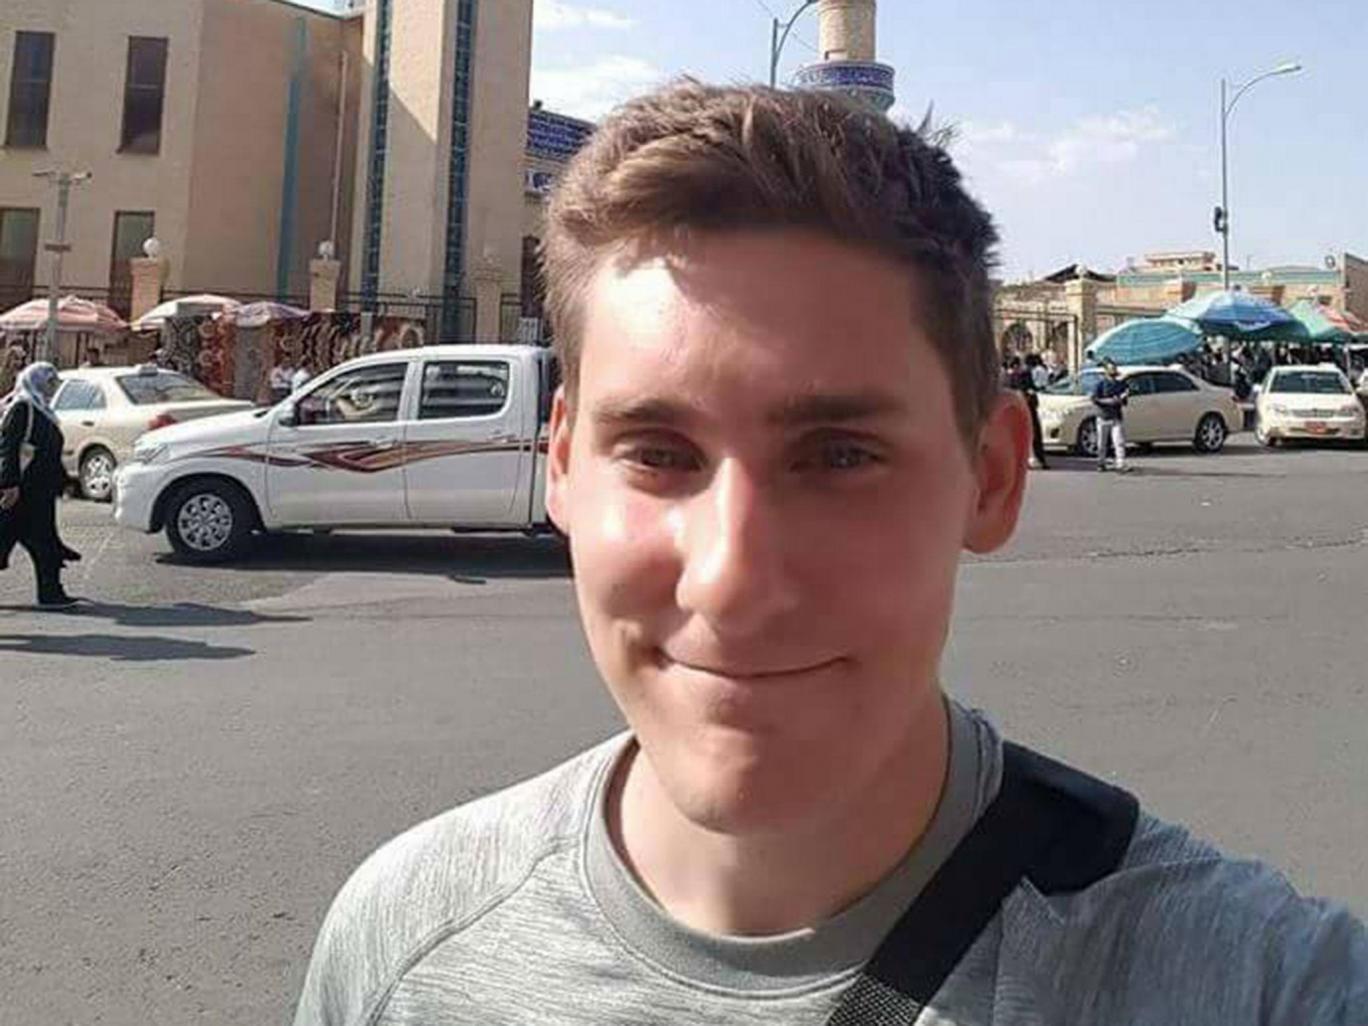 British man fighting Isis 'shot himself' to avoid being taken hostage